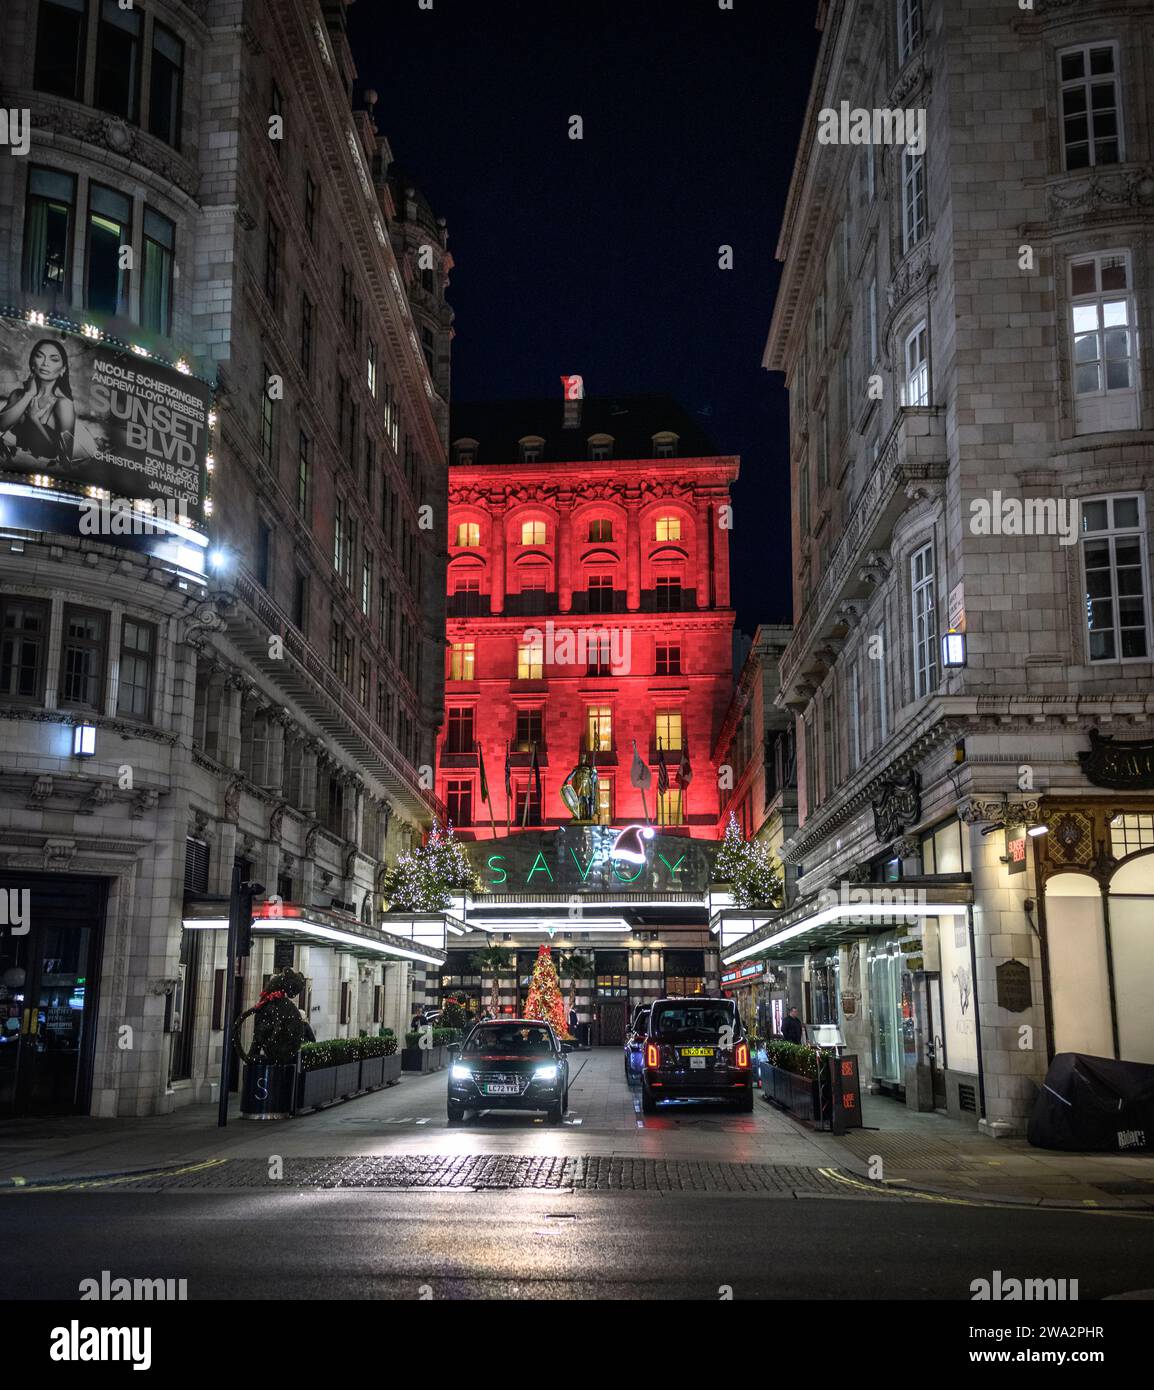 Il famoso hotel Savoy è illuminato a luci rosse durante il periodo natalizio a Londra, Inghilterra, Regno Unito Foto Stock